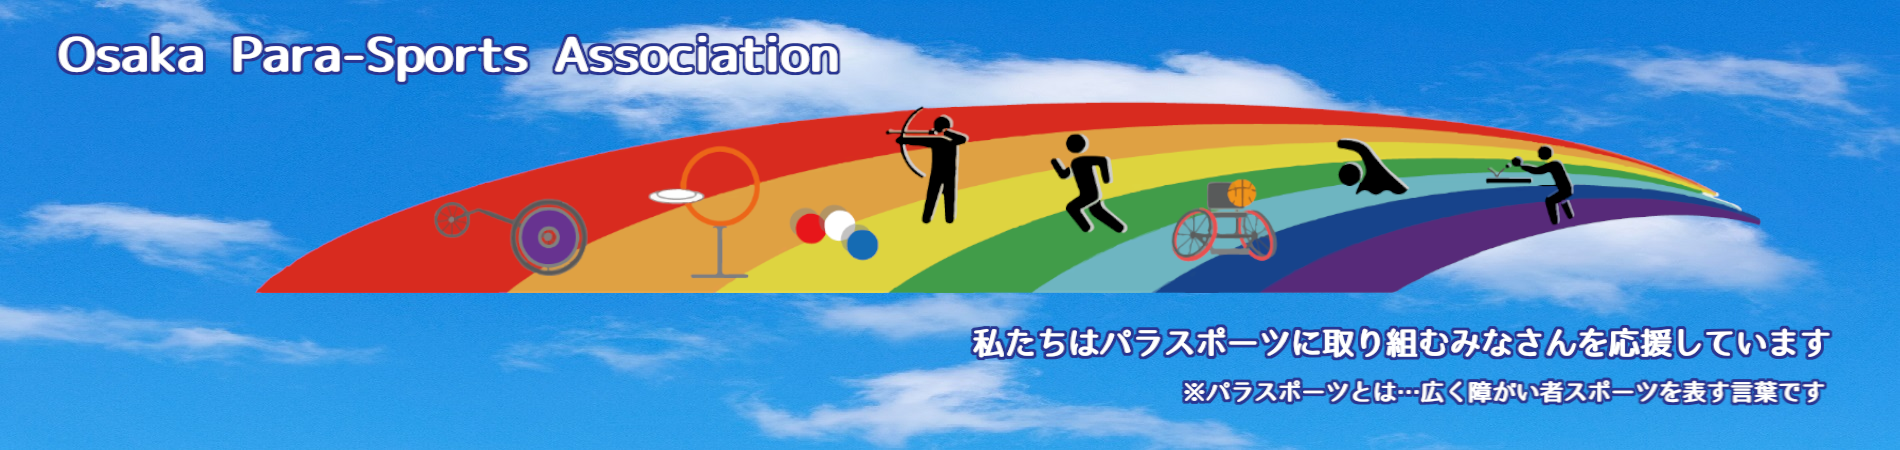 大阪府障がい者スポーツ協会は、パラスポーツに取り組むみなさんを応援しています。（パラスポーツとは、広く障がい者スポーツを表す言葉です。）